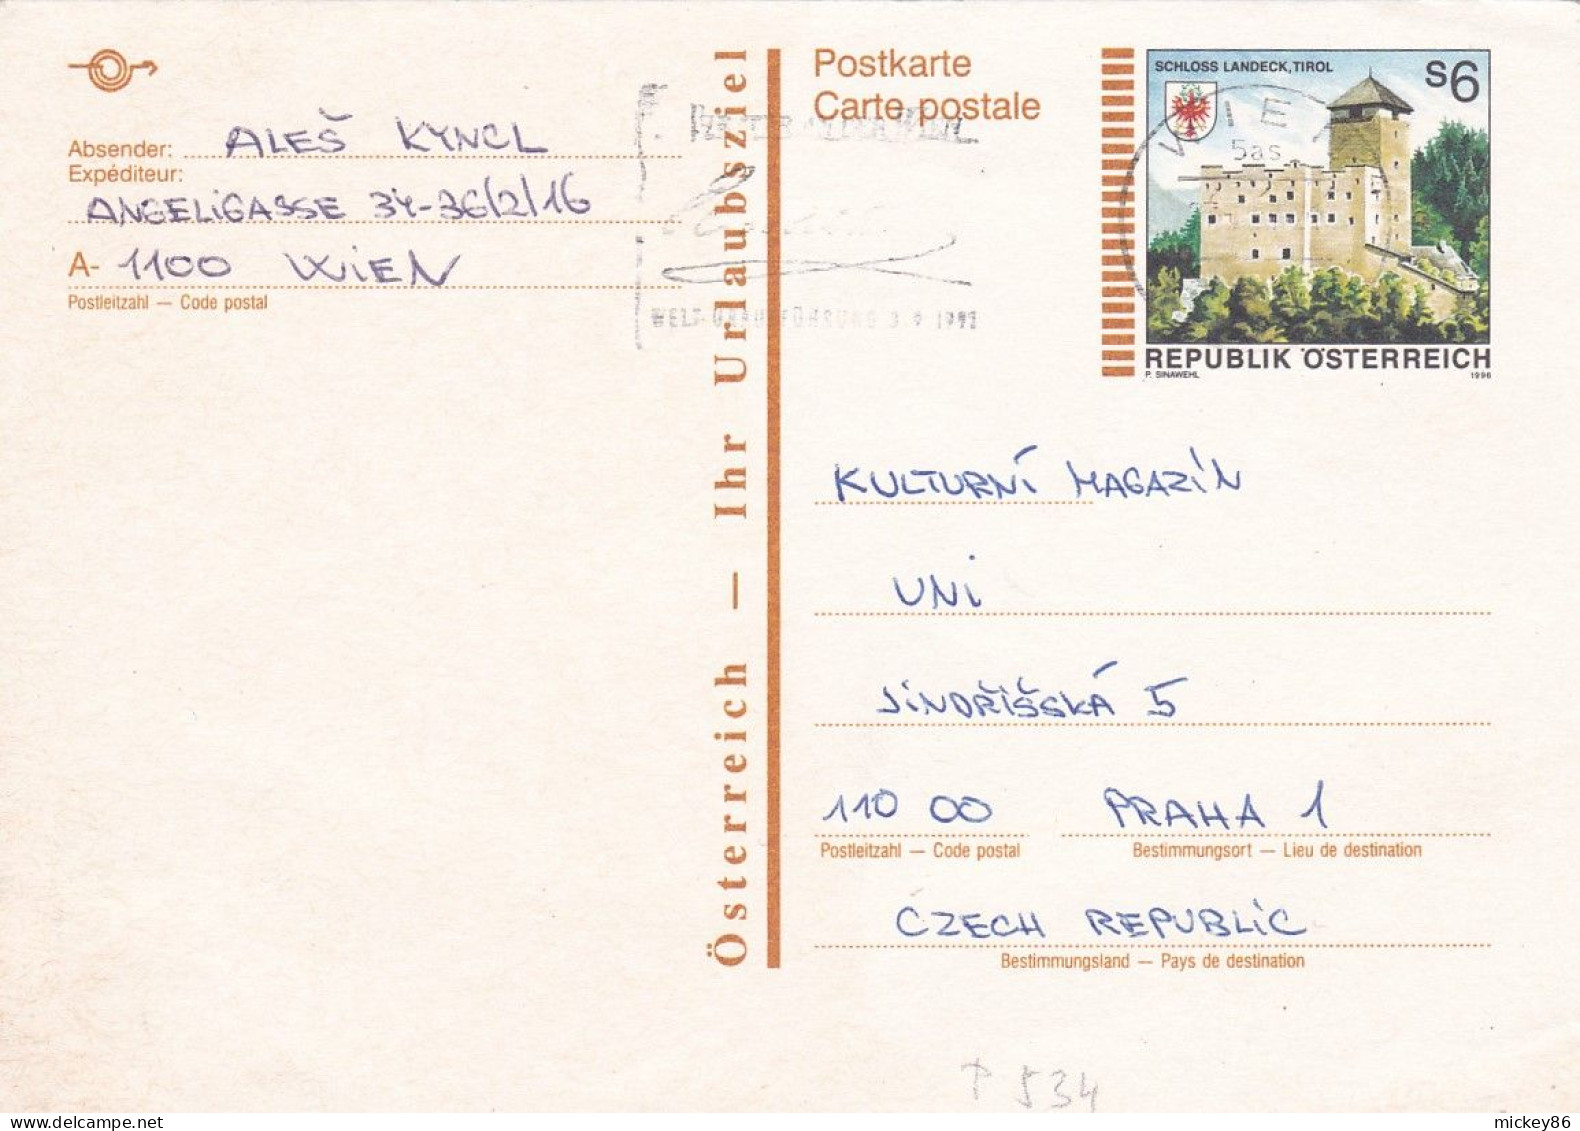 Autriche--1991--entier Carte Postale (schloss Landeck) De WIEN Pour PRAHA (Czech Republic) .... - Covers & Documents